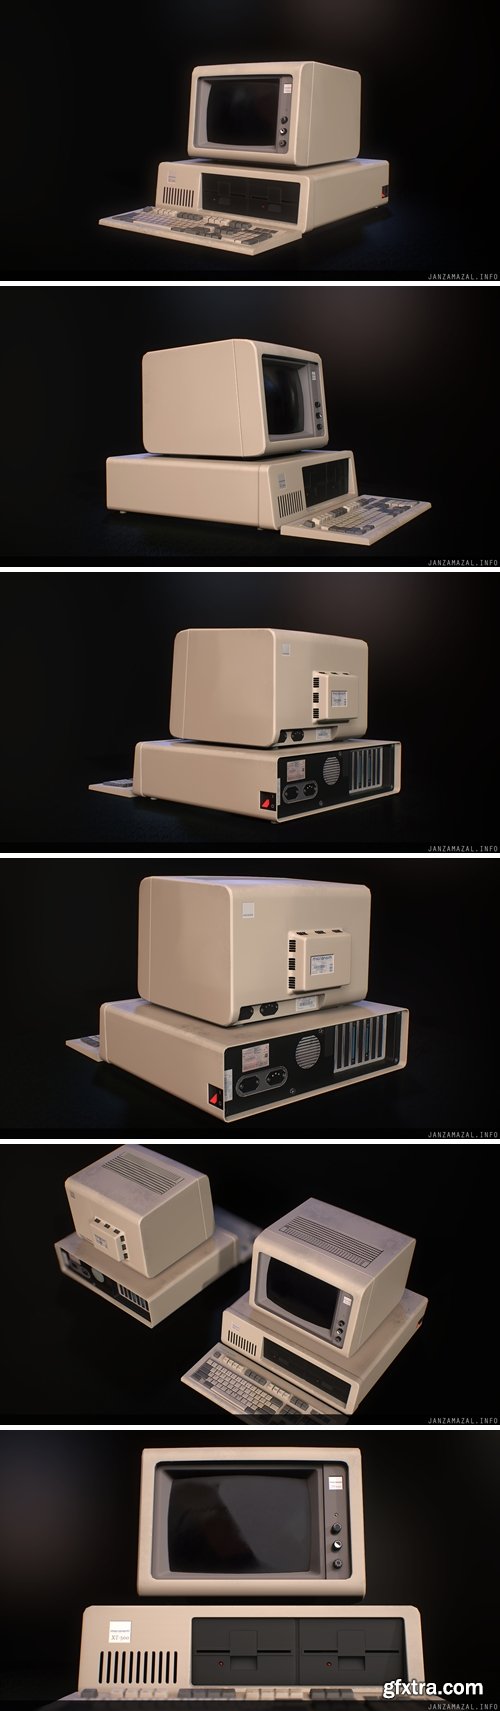 IBM PC XT 5150